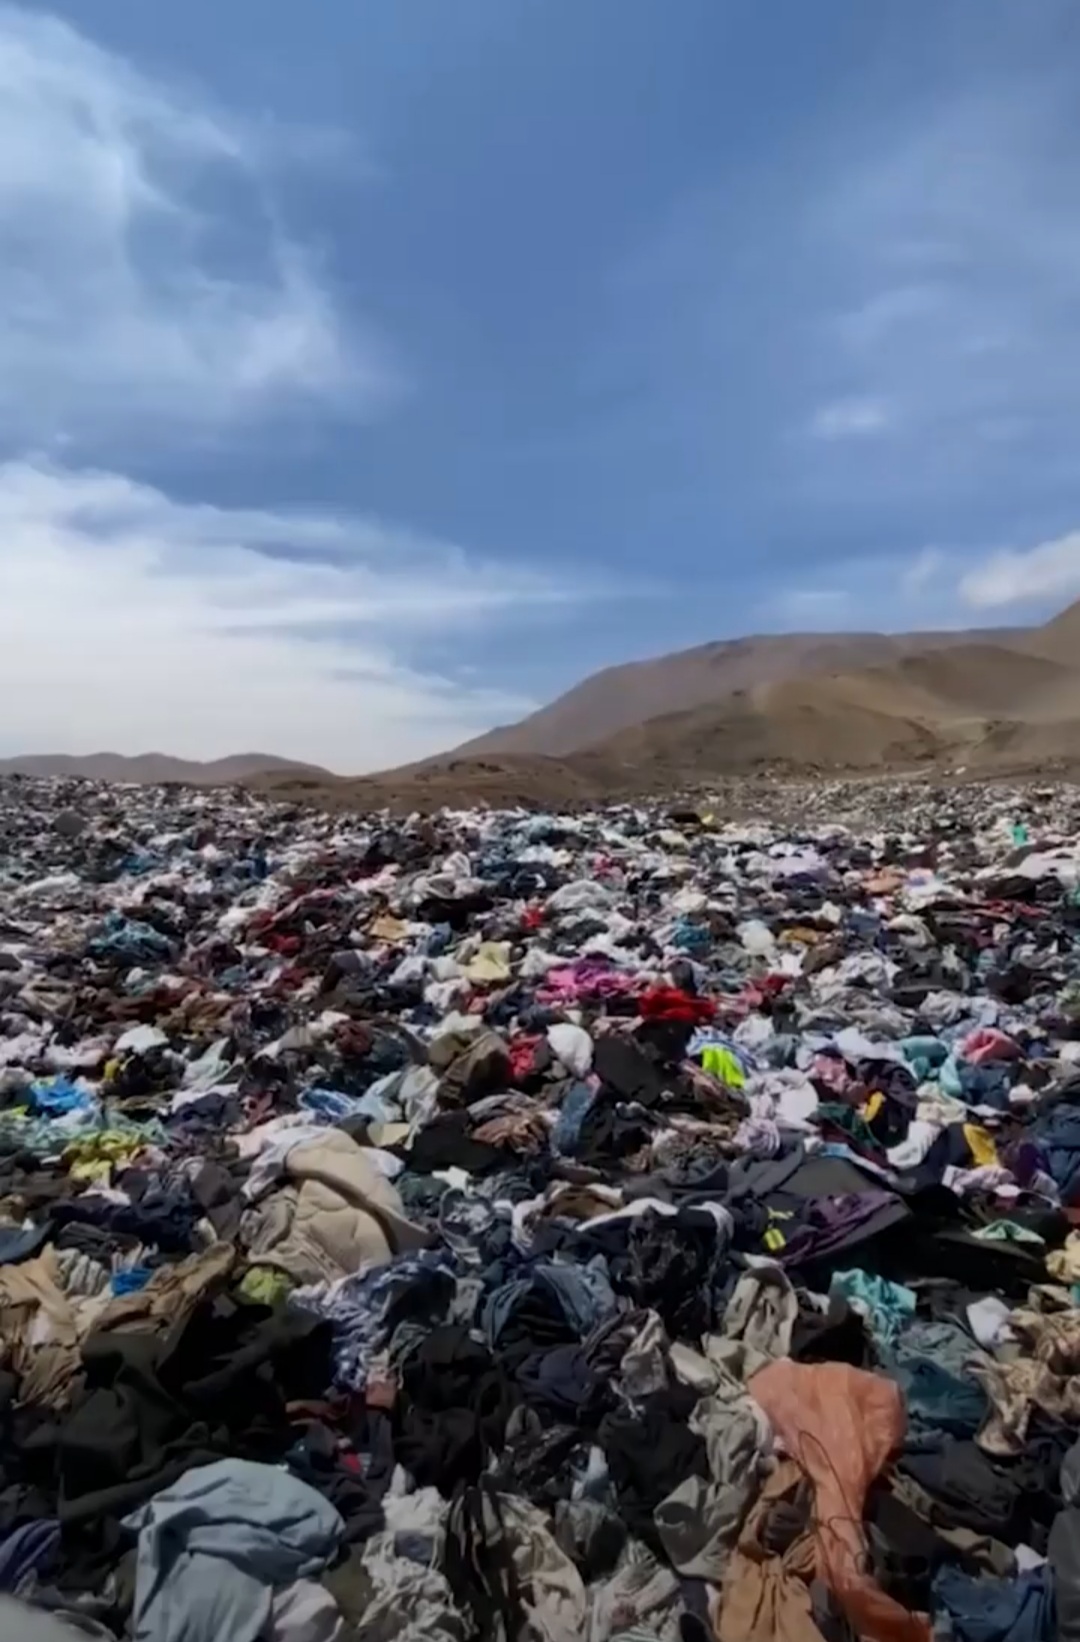 Contaminación impensada: montañas de ropa sin usar se acumulan en el desierto de Atacama